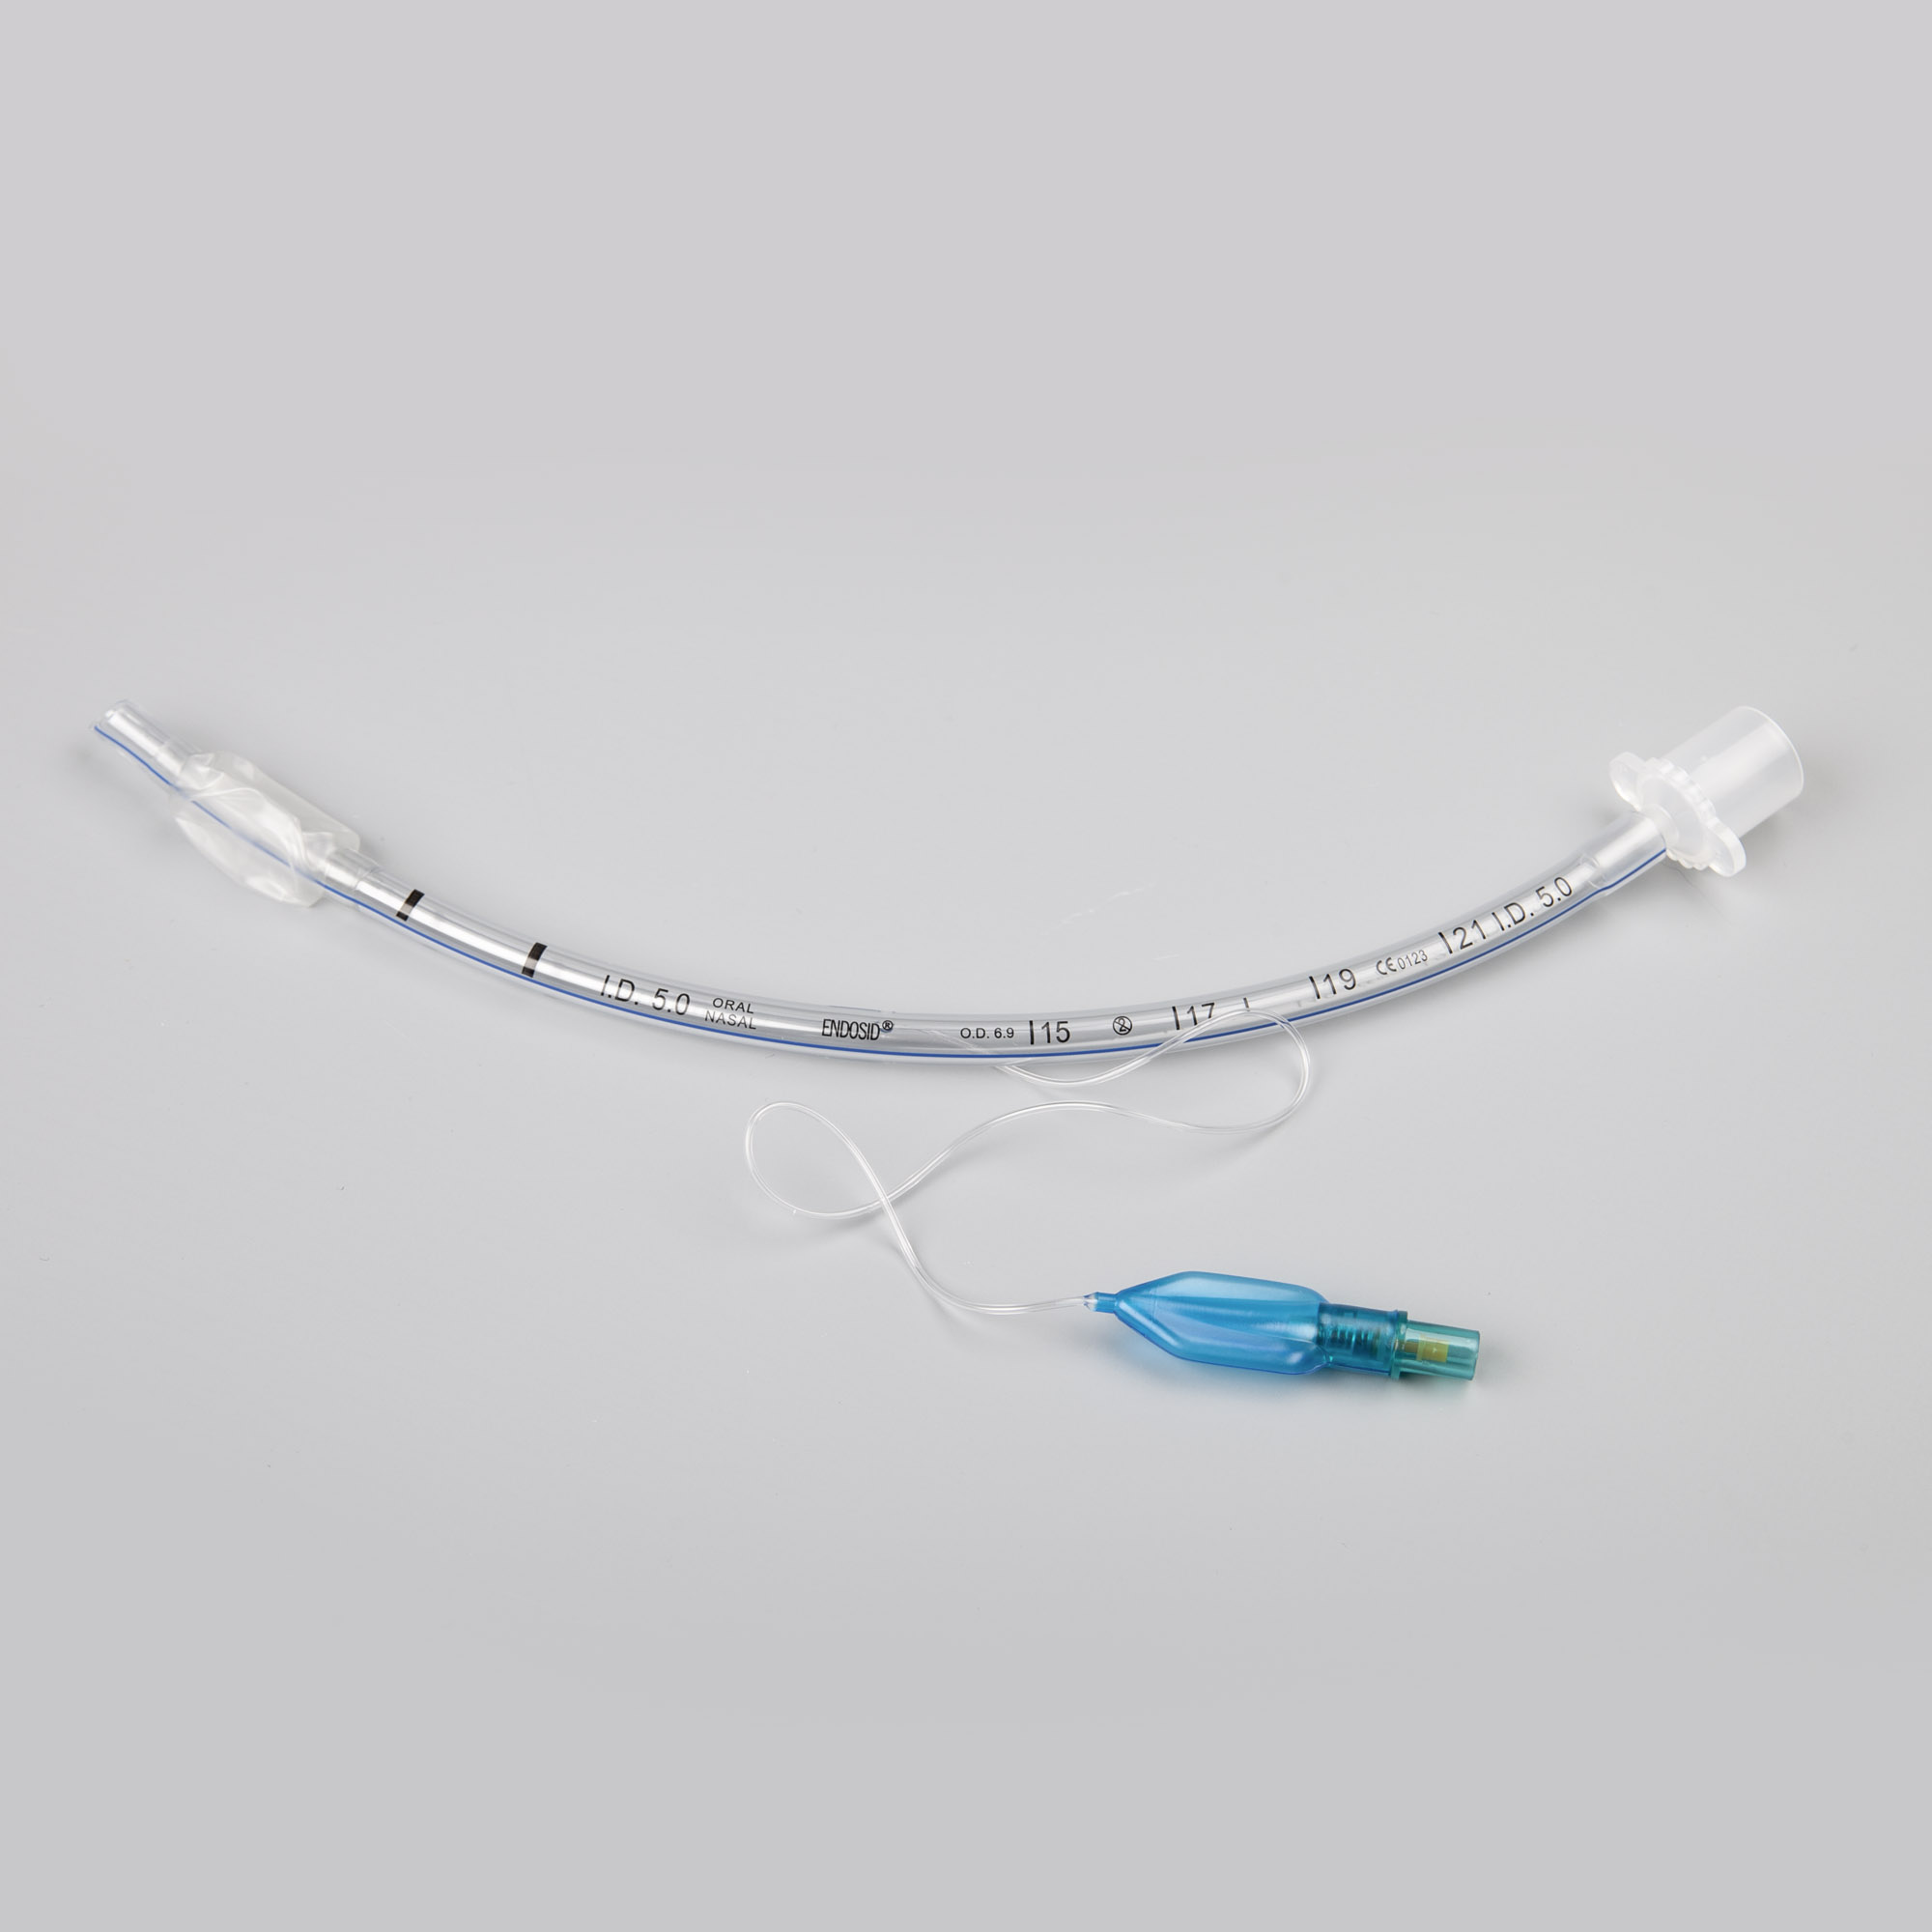 Endosid®-Tubus nasal/oral mit Cuff, Murphy-Auge und Mandrin I.D. 7,0 mm (CH 28)